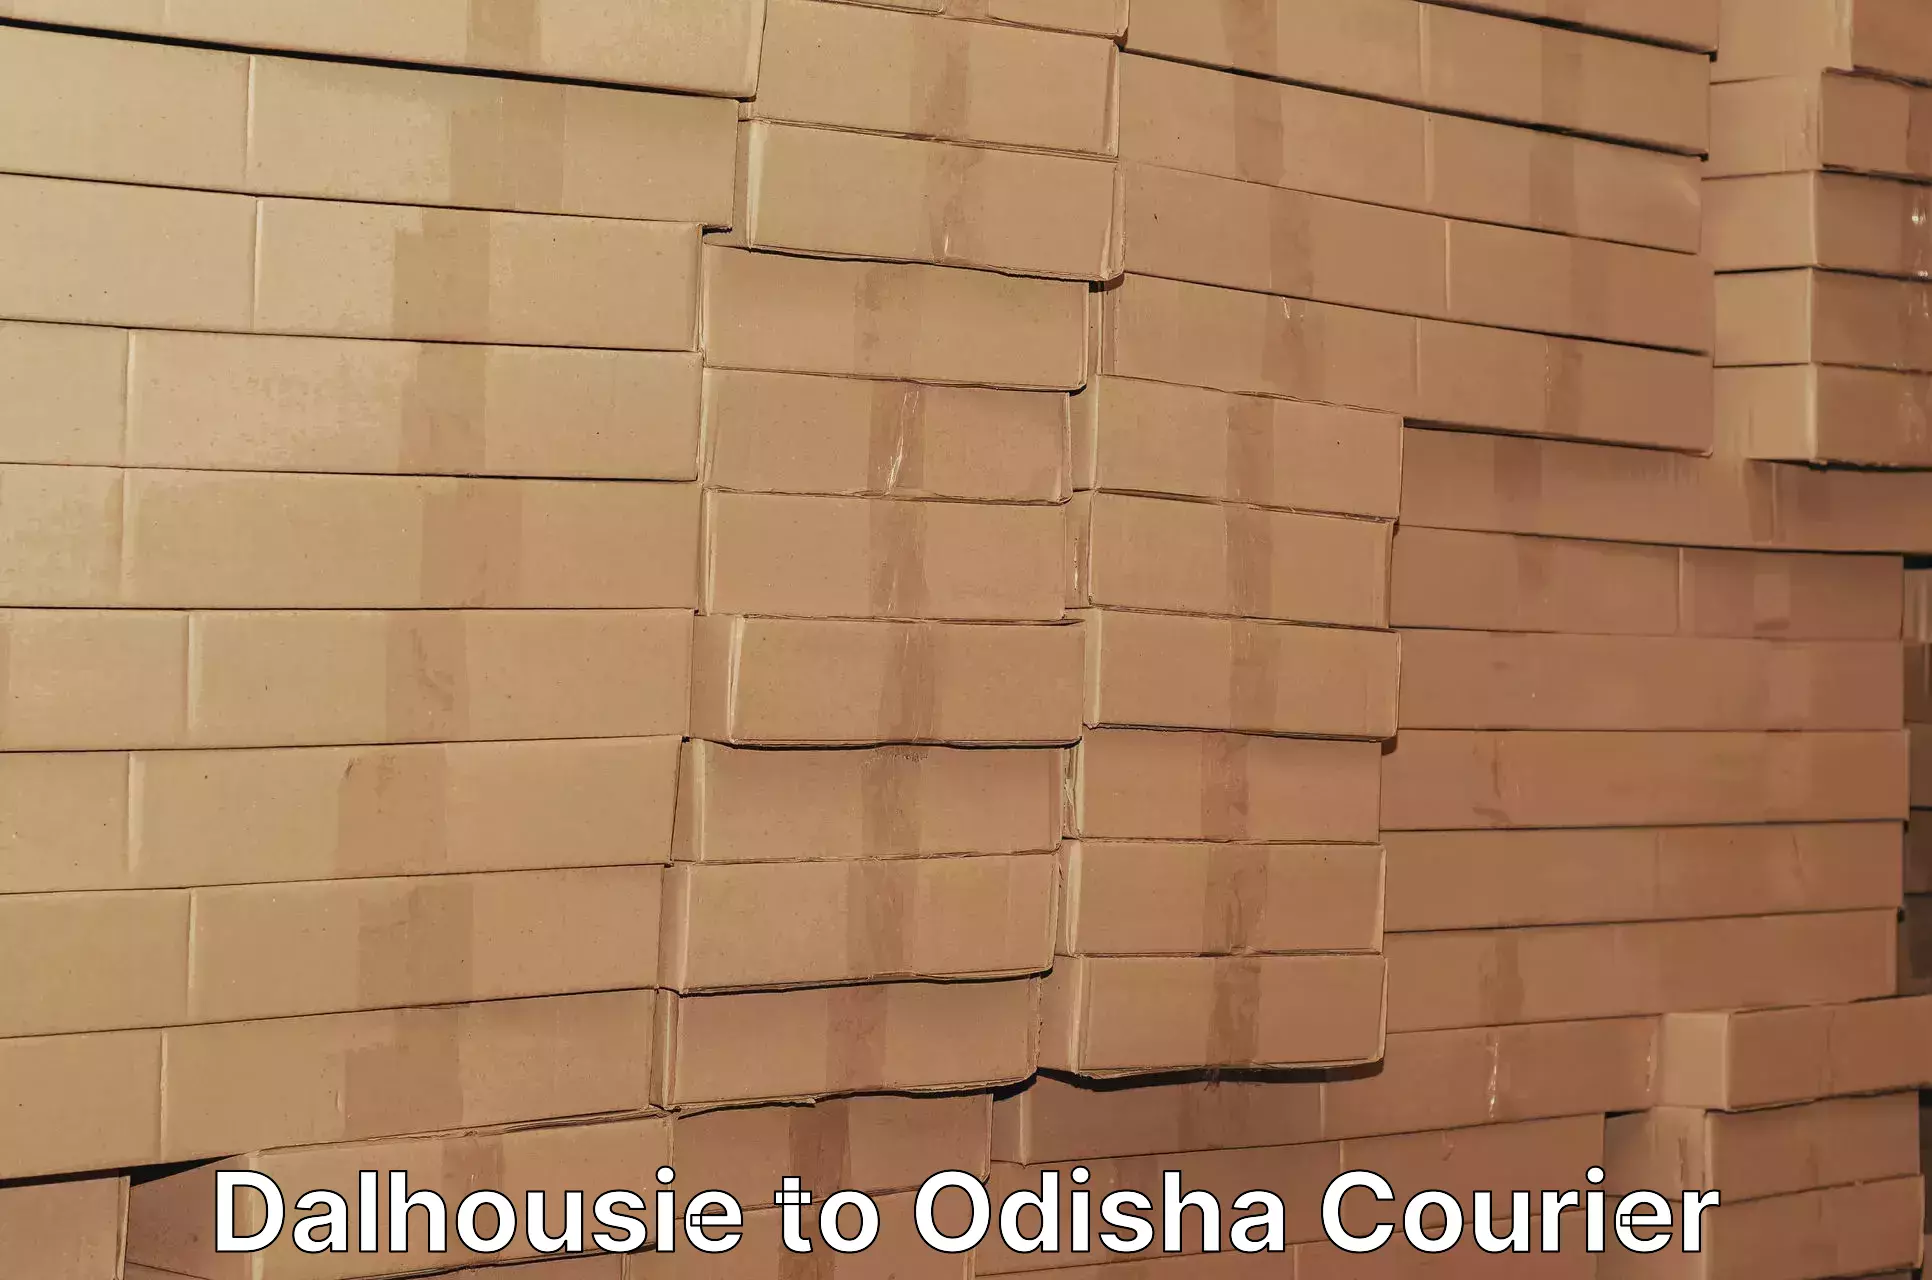 Overnight delivery services Dalhousie to Daspalla